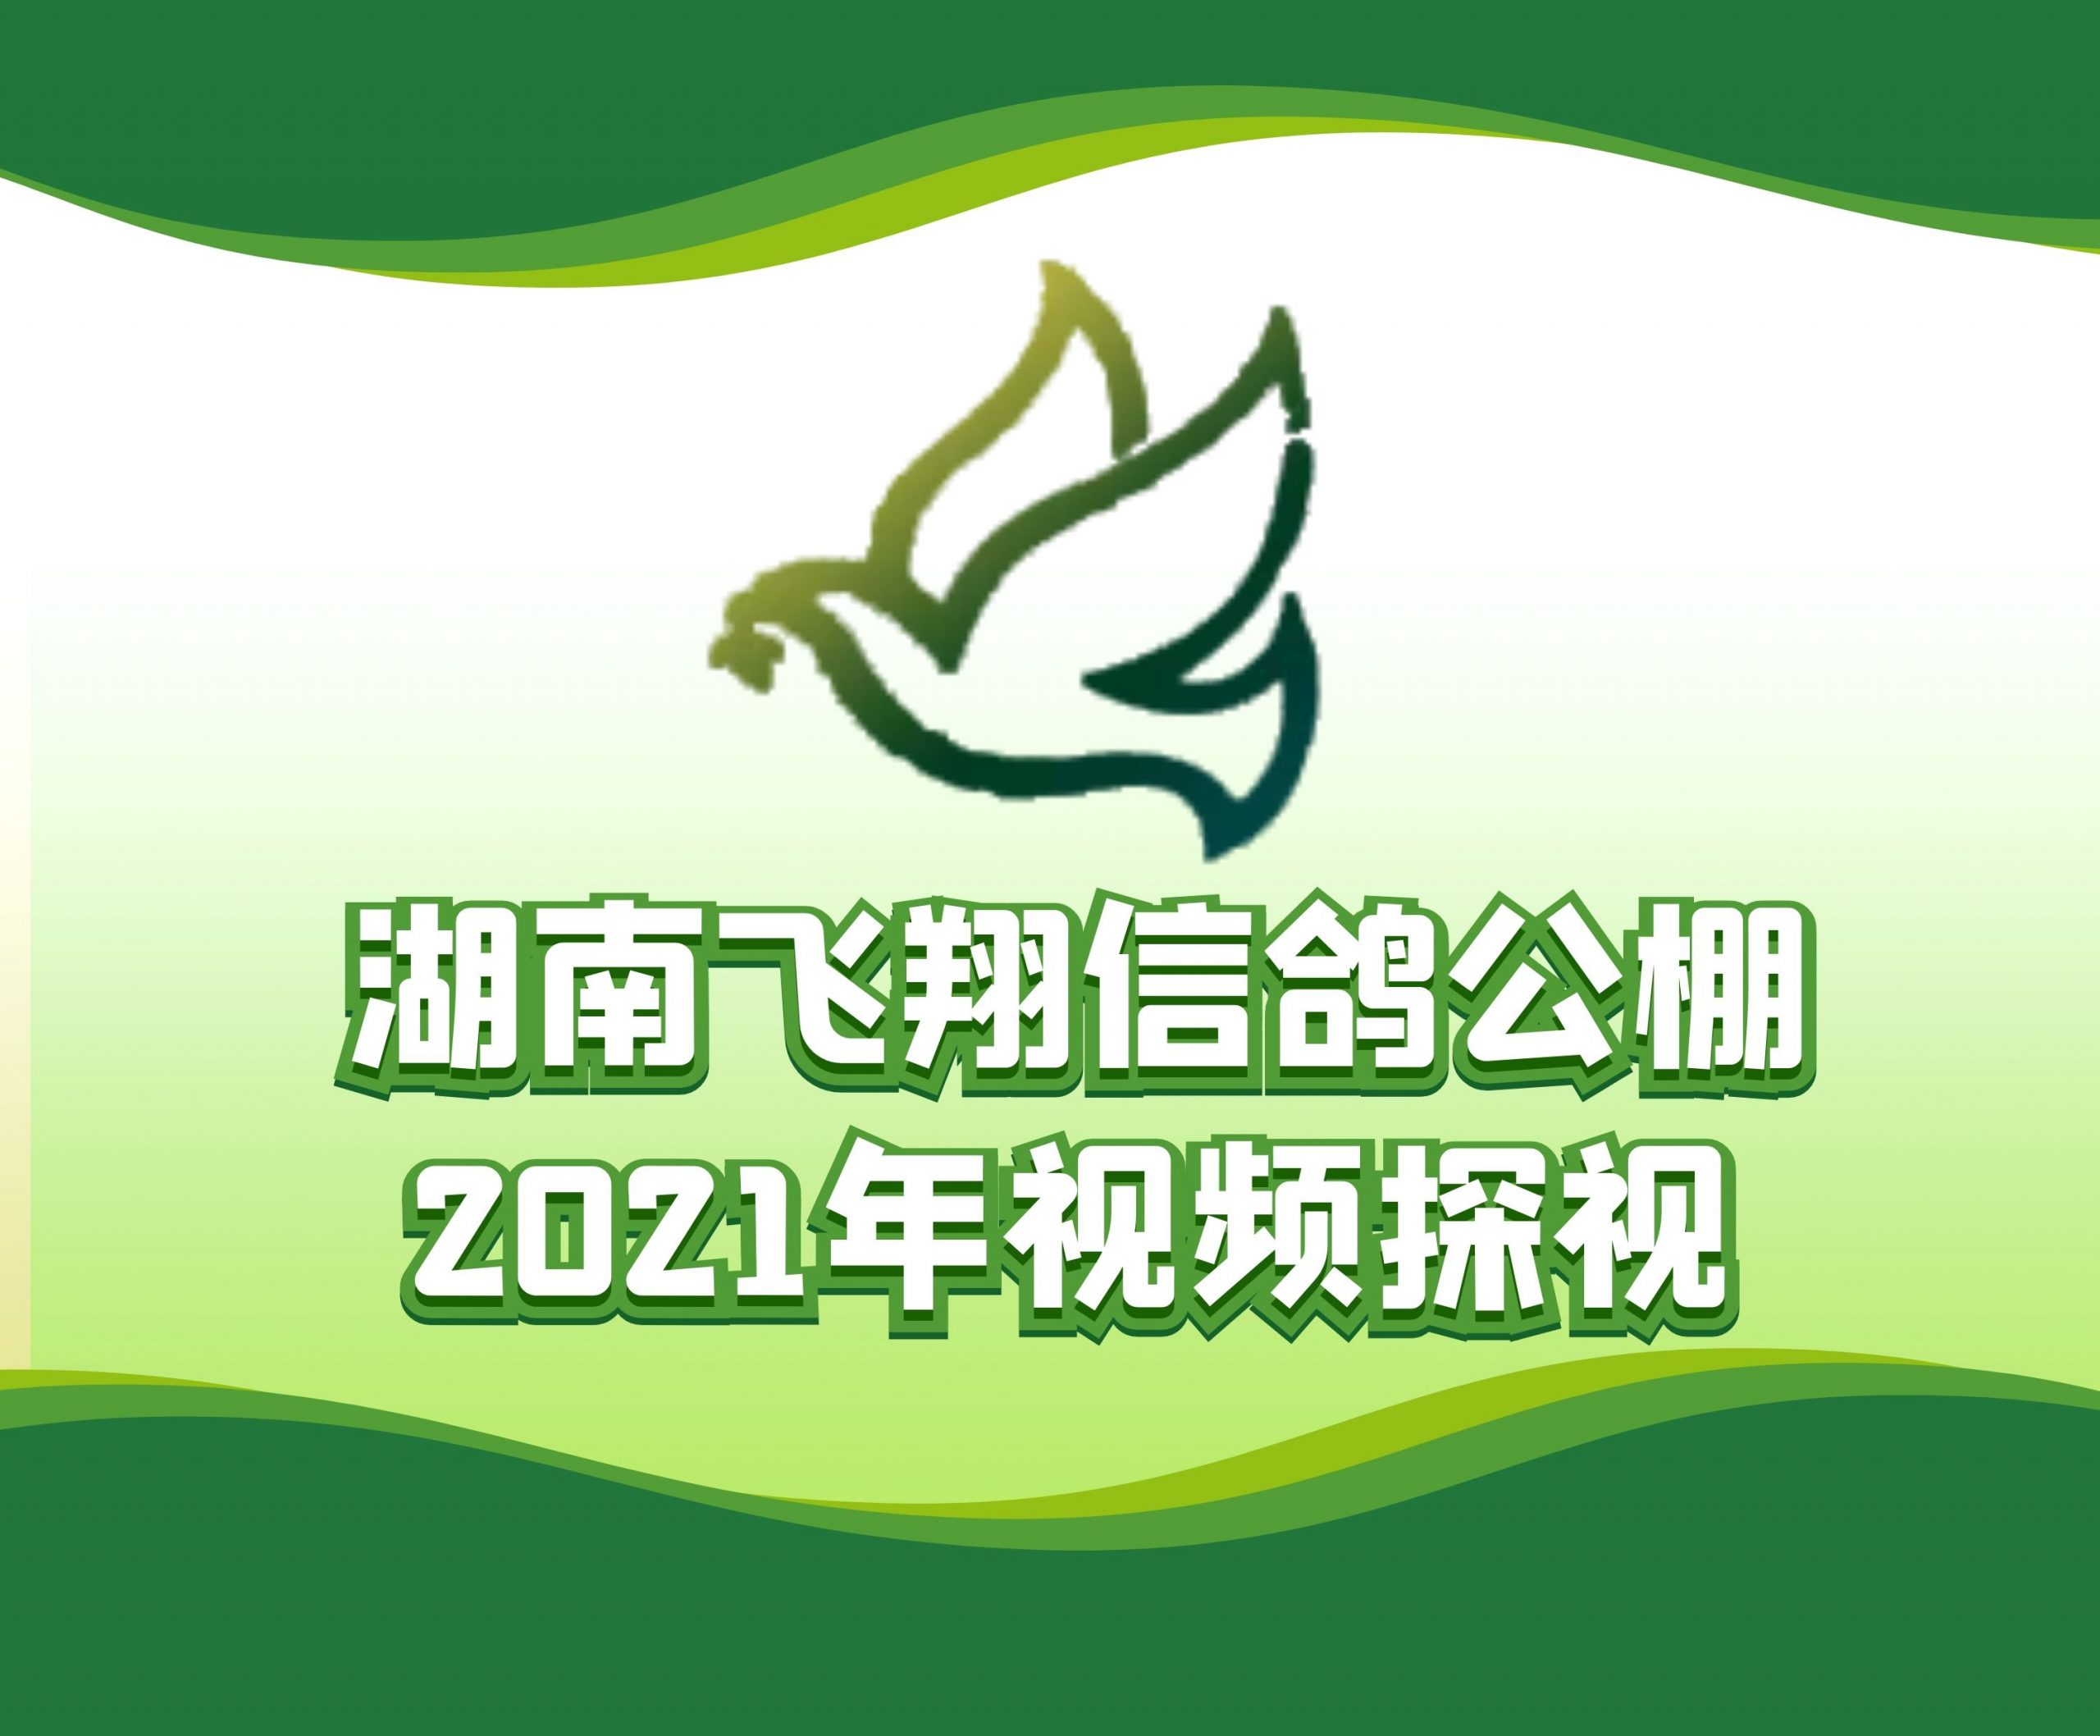 向桂林-2021-18-0113430